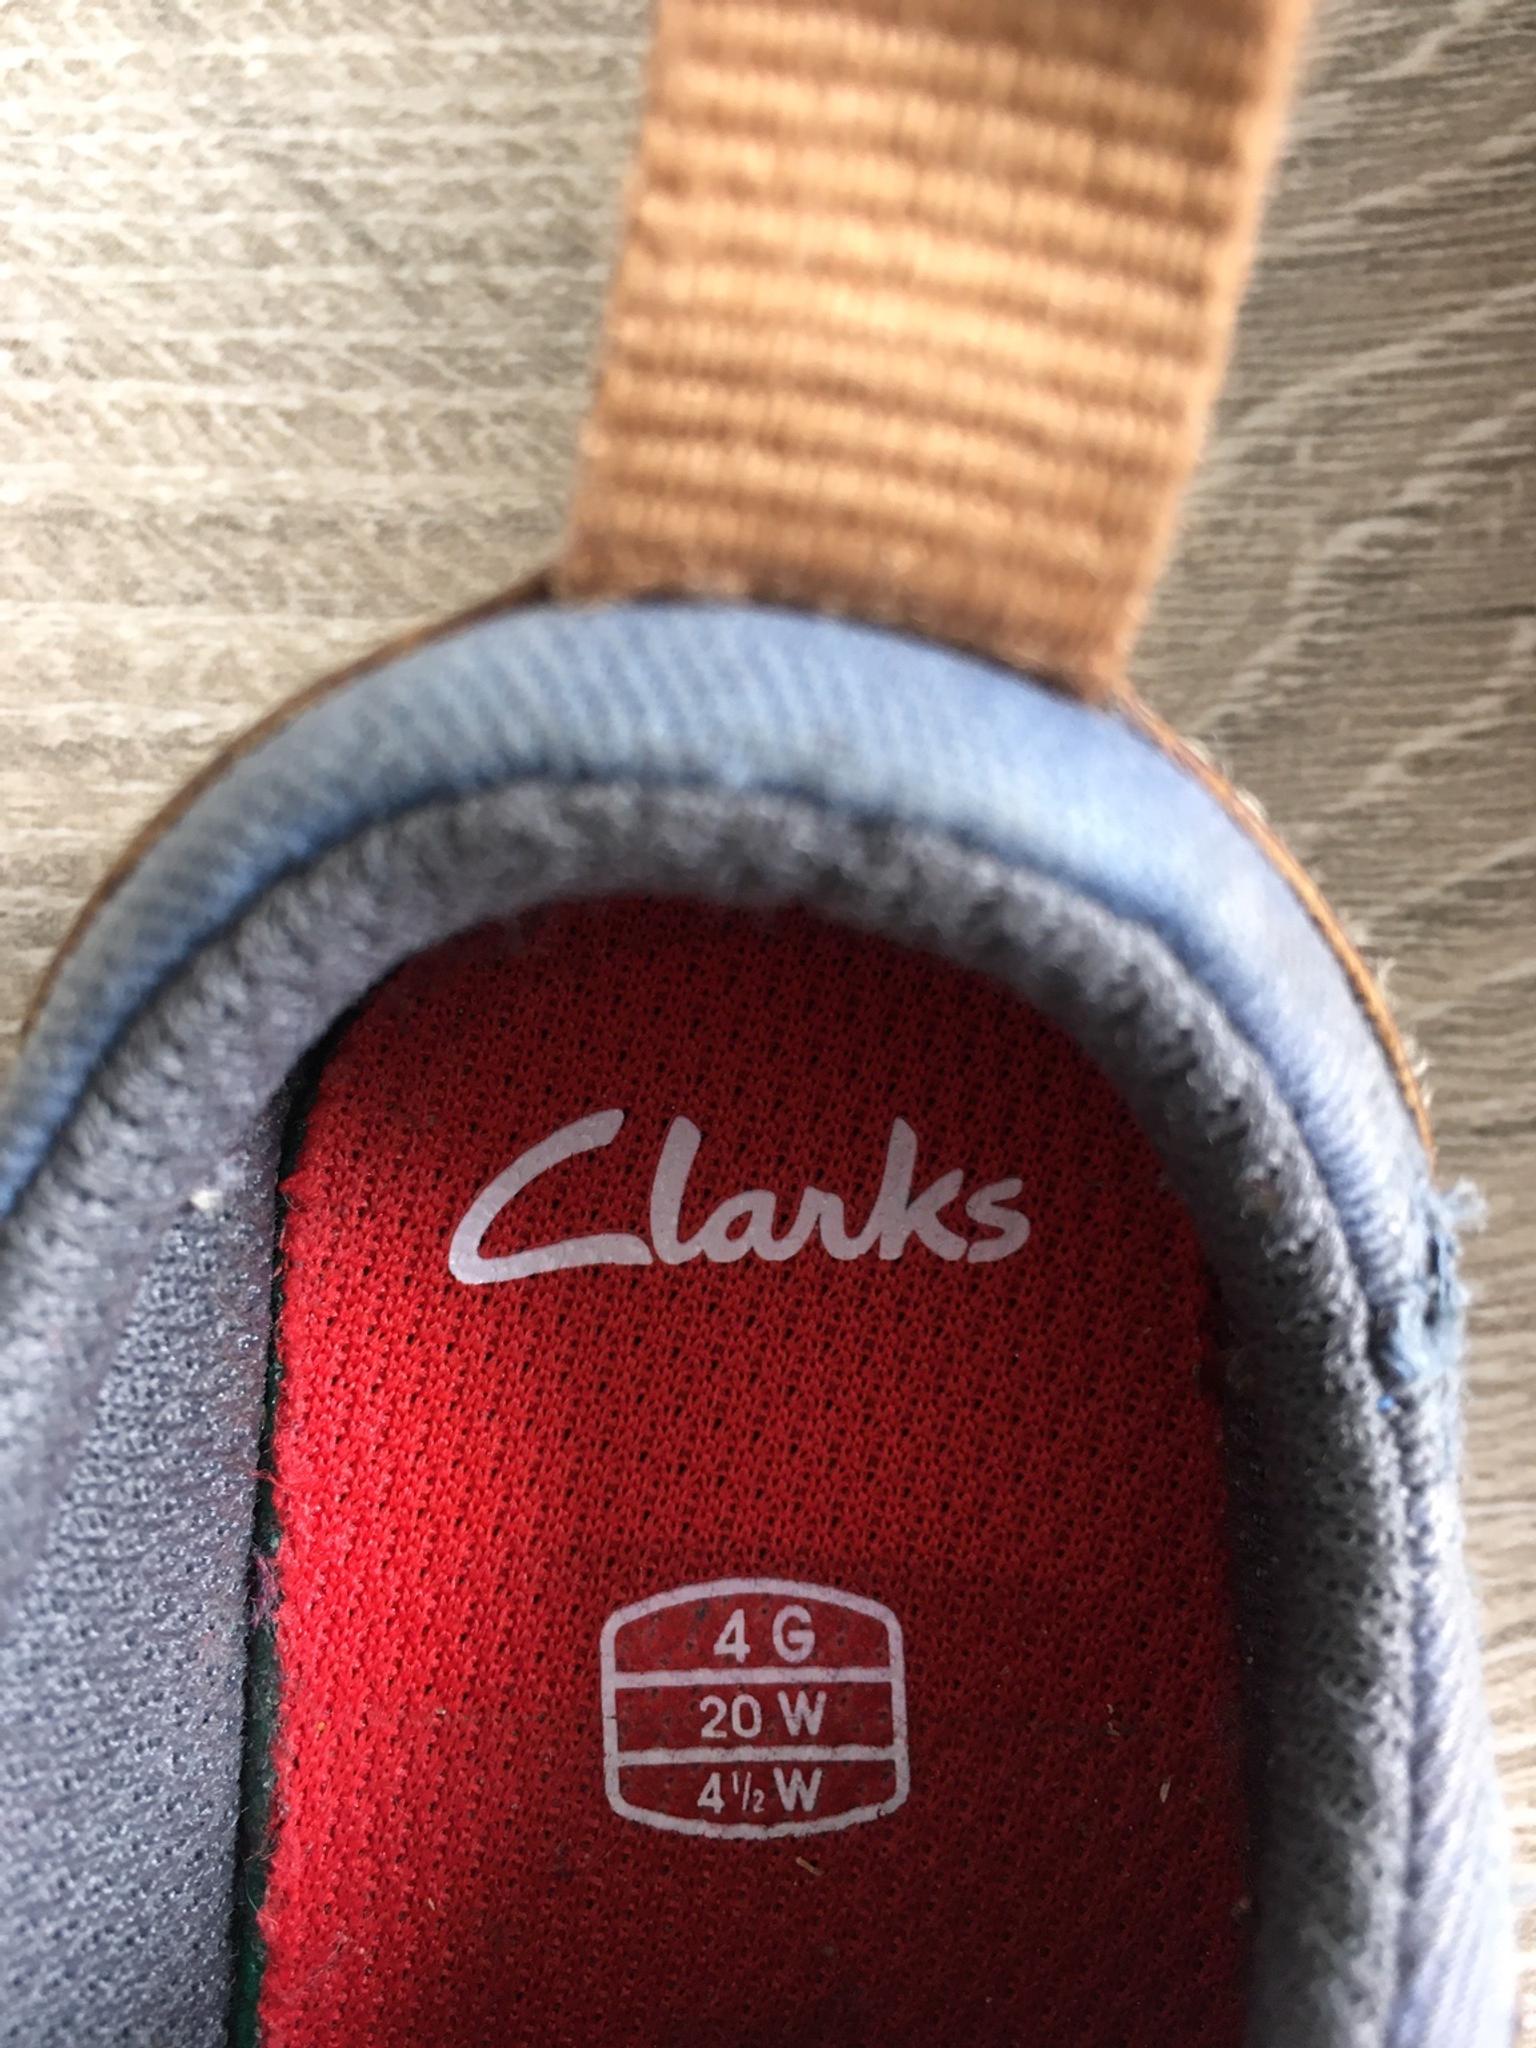 clarks 4g size